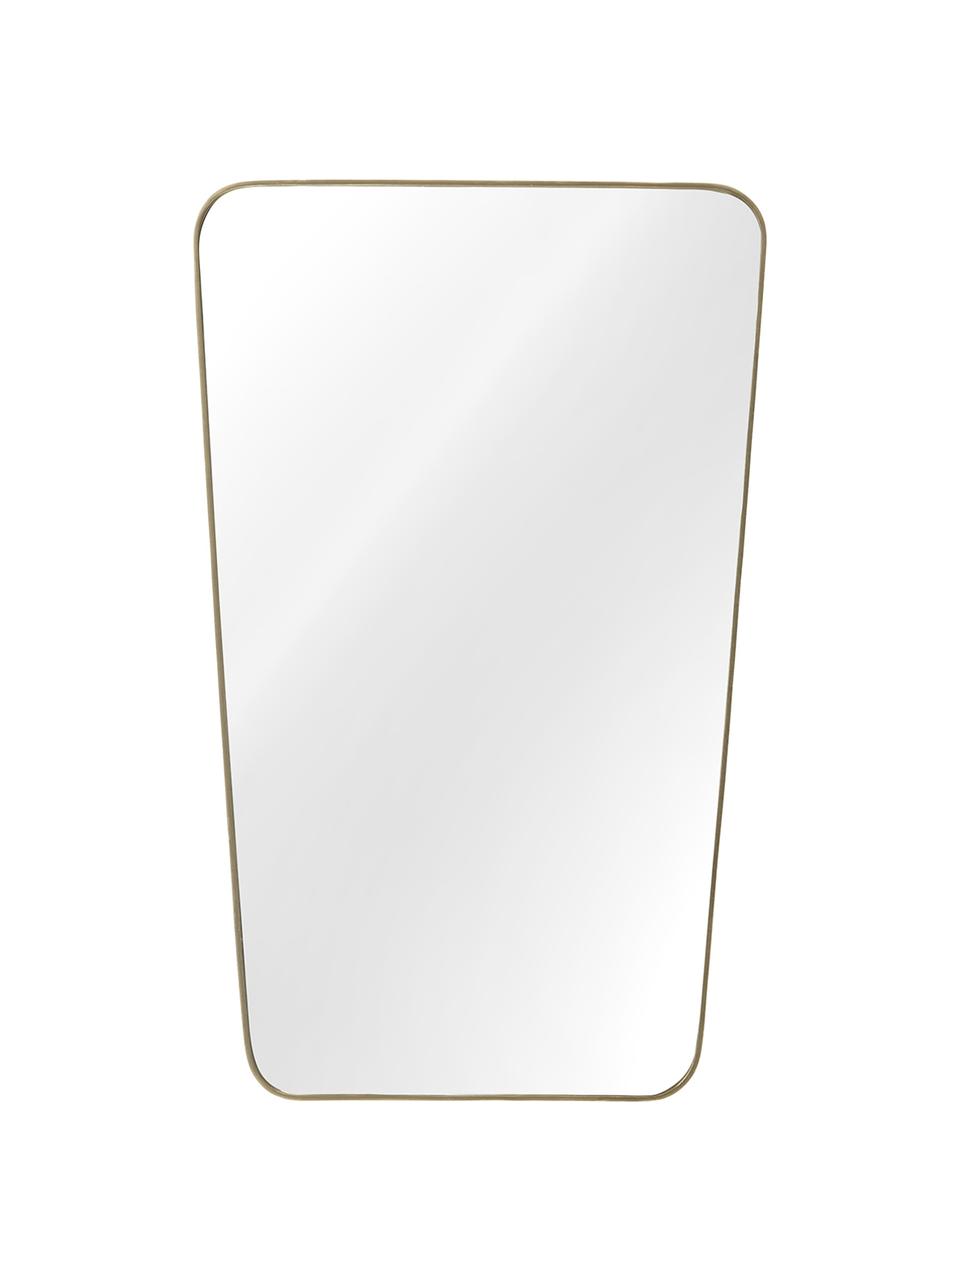 Eckiger Wandspiegel Adrienne mit gebürstetem Rahmen, Rahmen: Metall, vermessingt, Spiegelfläche: Spiegelglas, Rückseite: Mitteldichte Holzfaserpla, Messing, 50 x 80 cm